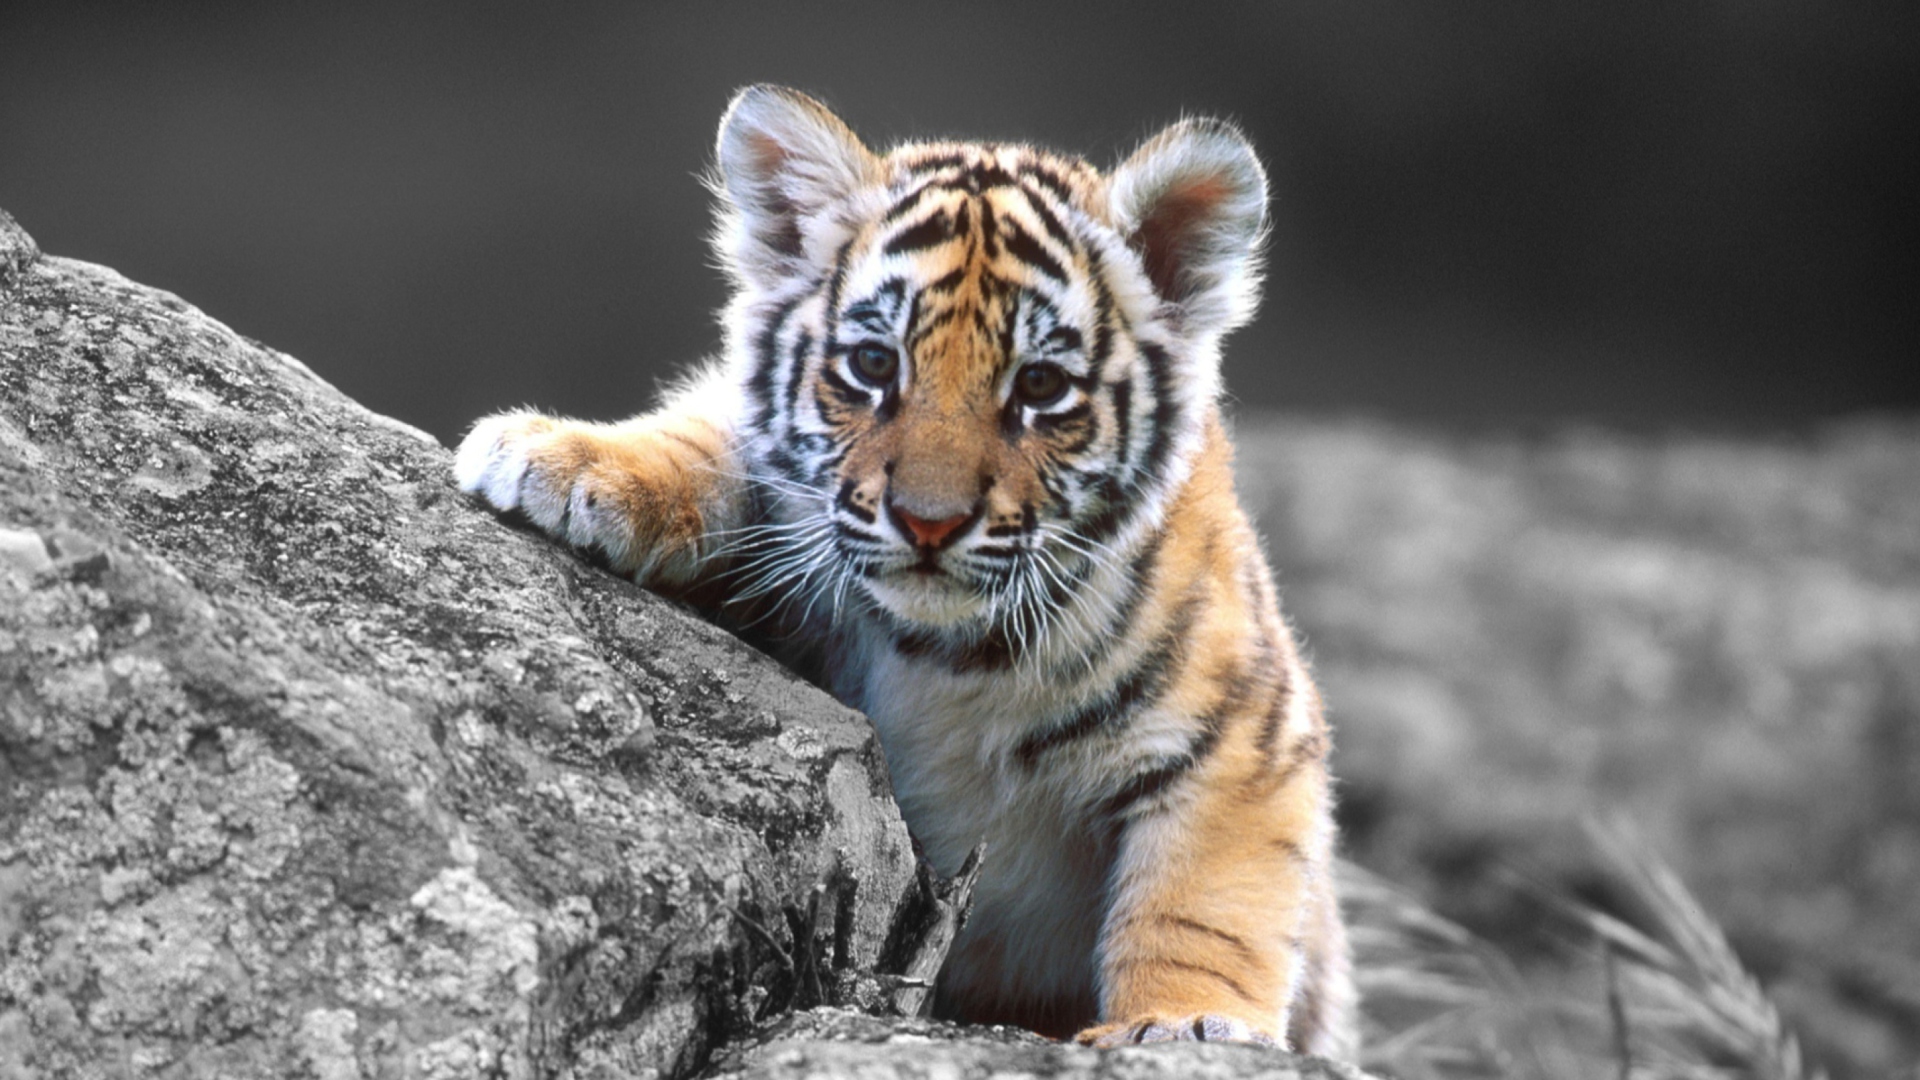 Cute Tiger Cub wallpaper 1920x1080